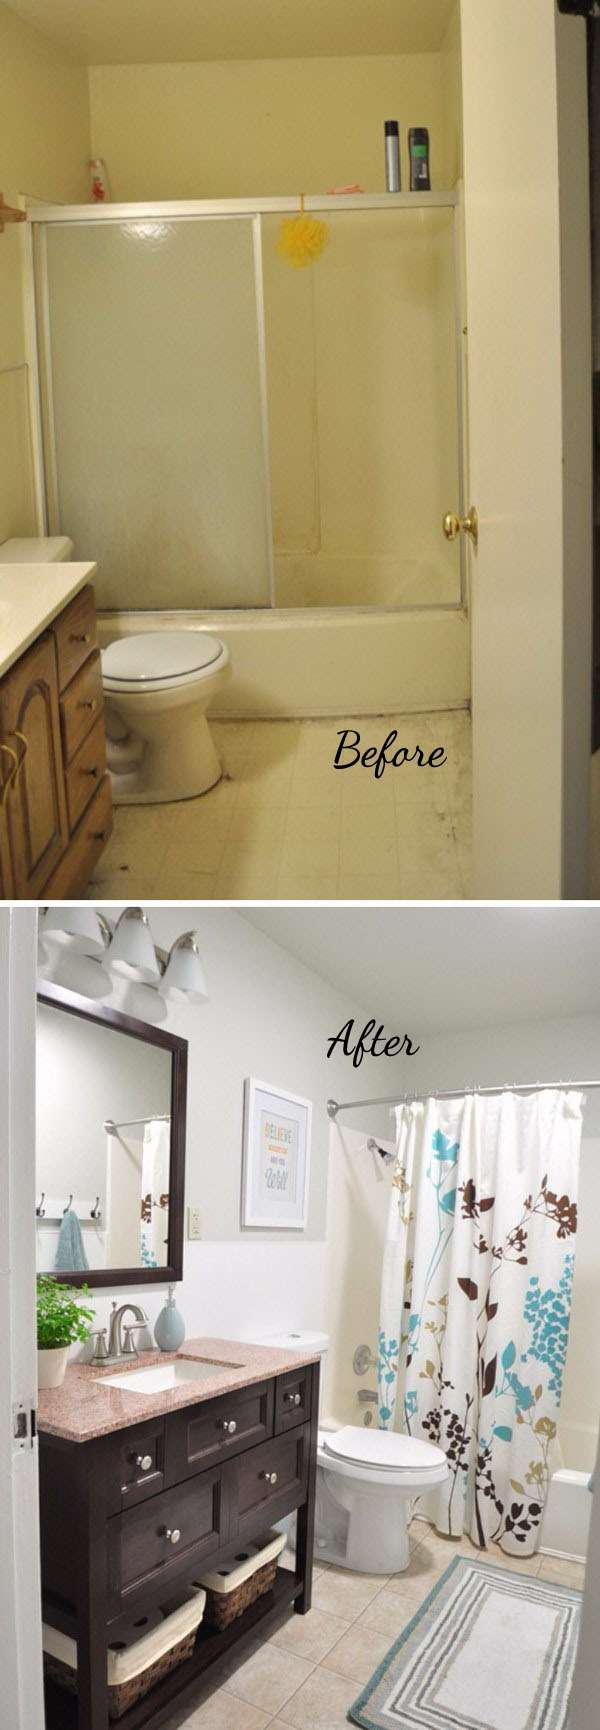 16 идей преображения старой ванной комнаты 12 | Дока-Мастер